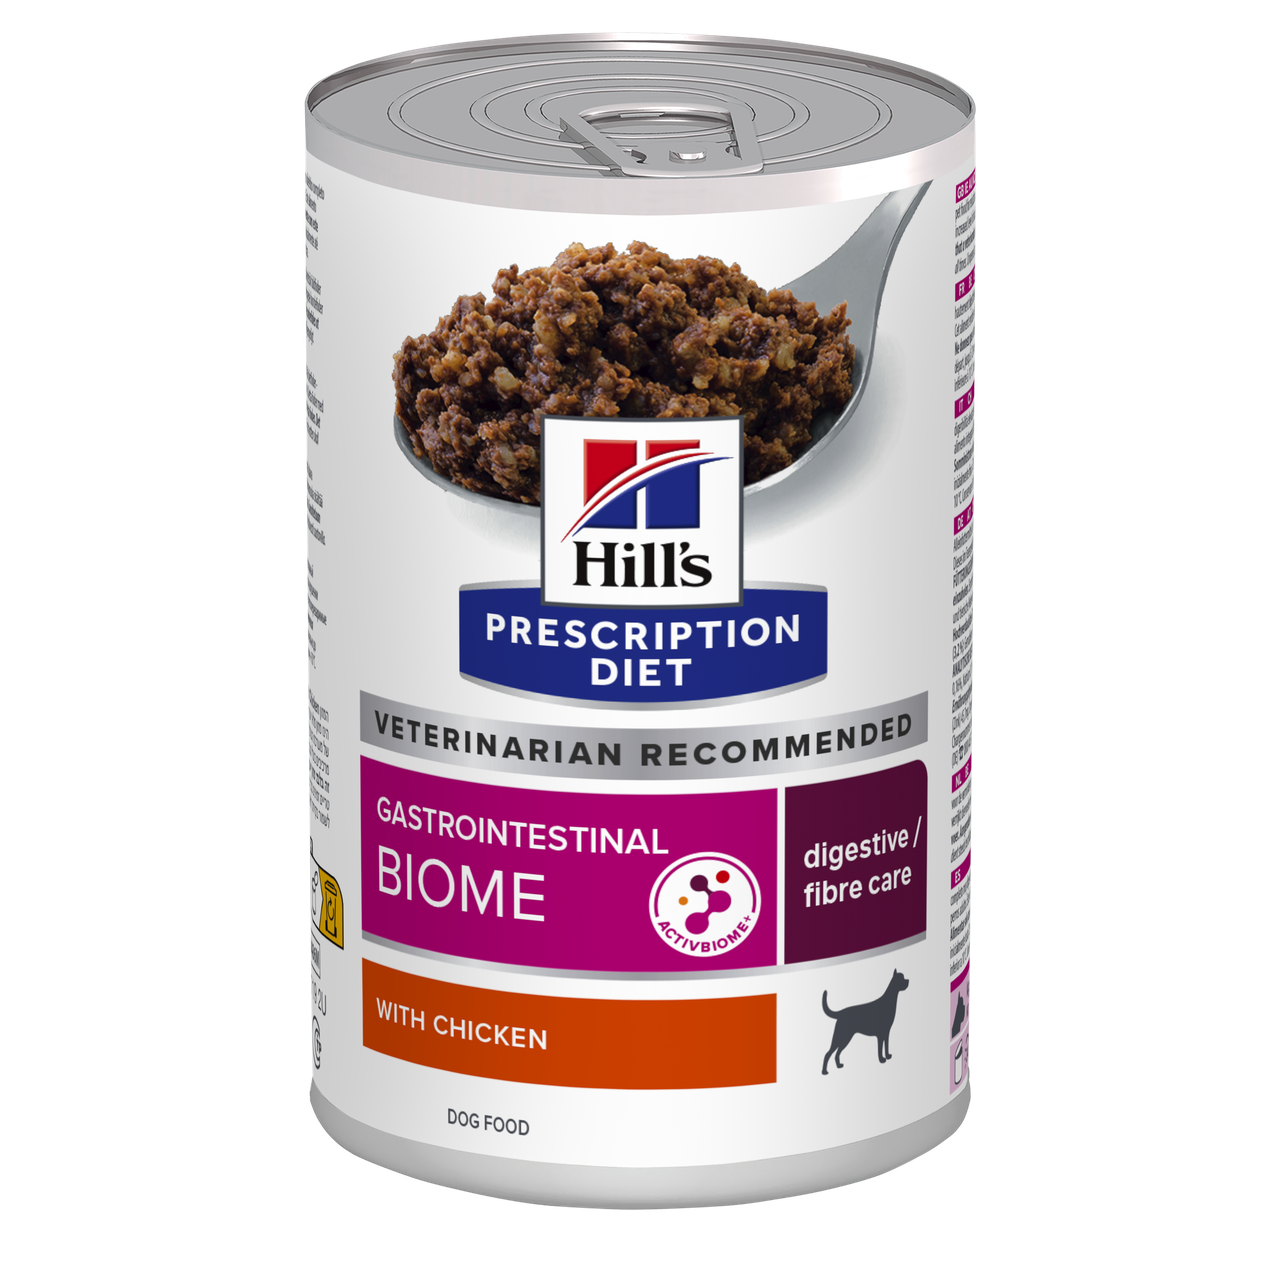 Вологий корм Hill’s PRESCRIPTION DIET Gastrointestinal Biome для собак при захворюваннях шлунково-кишкового тракту, консерва,370г